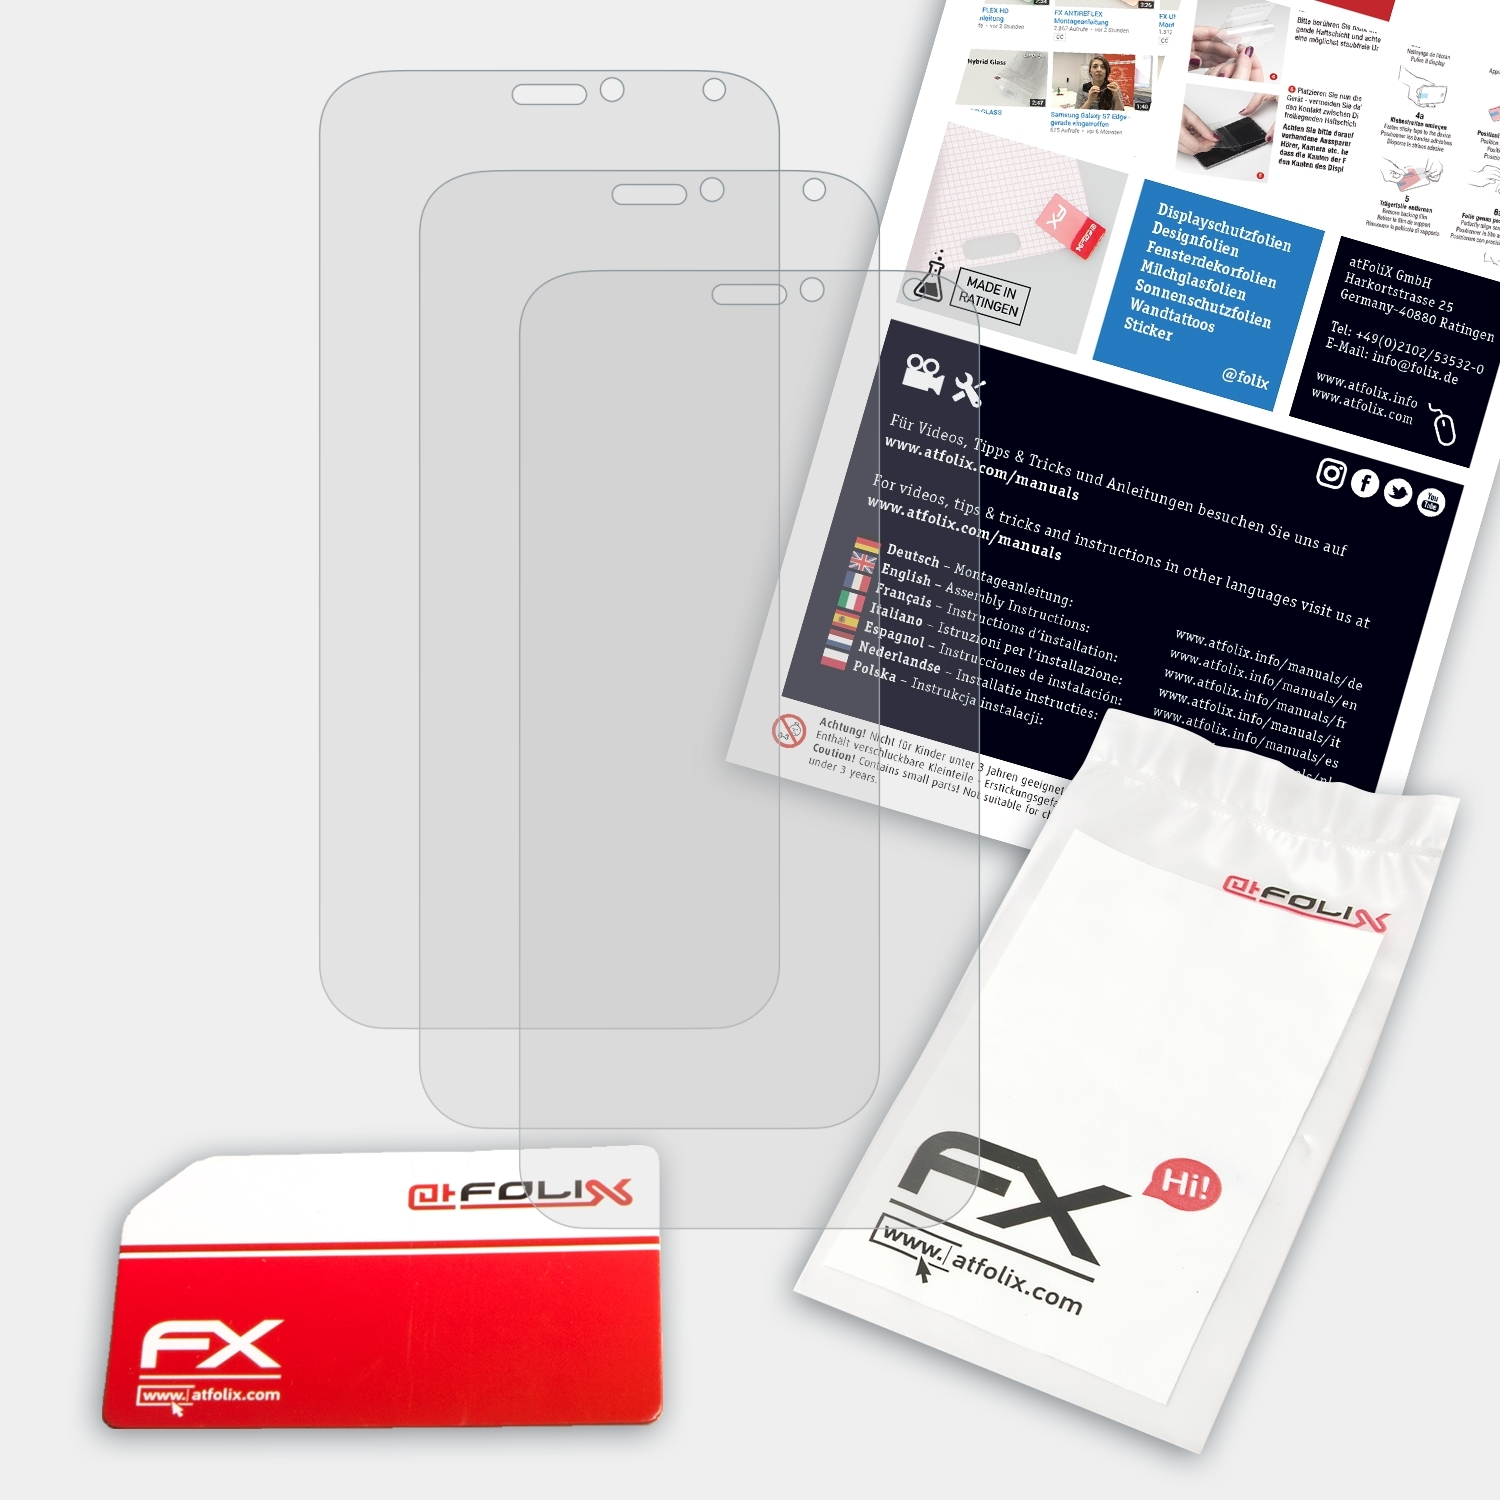 FX-Antireflex Energy Plus) 3 Phicomm Displayschutz(für ATFOLIX 3x